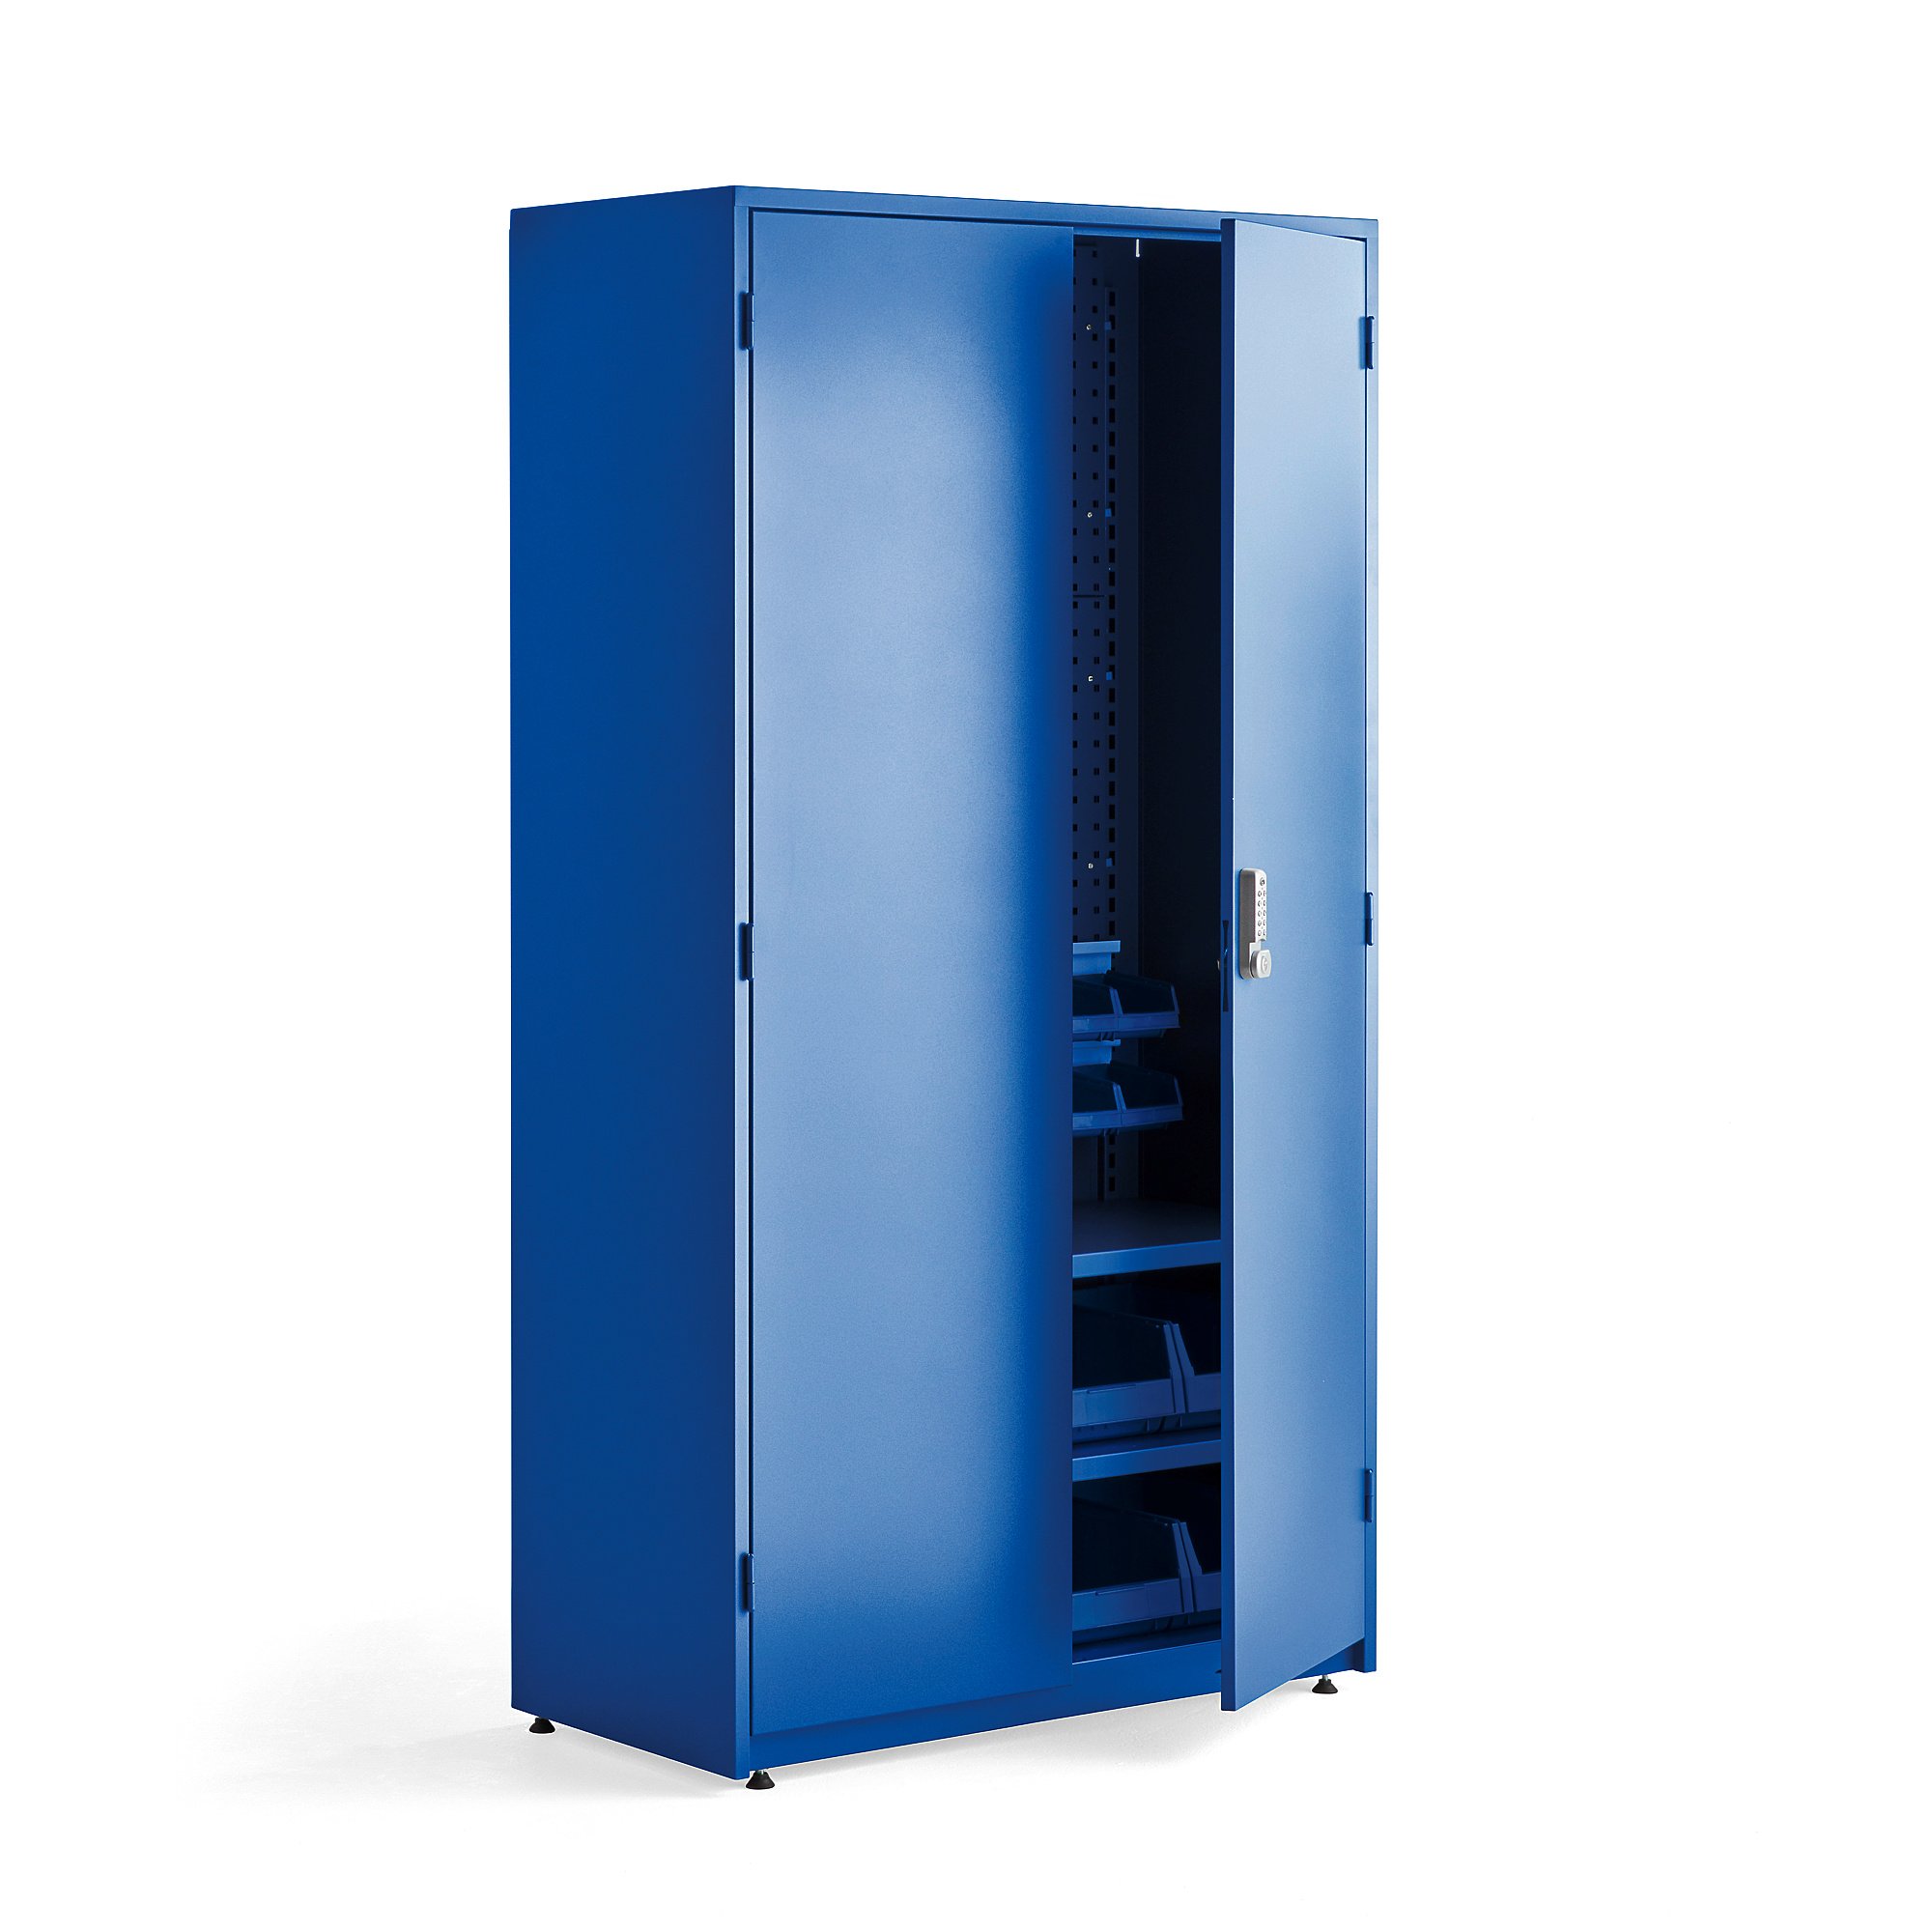 Dílenská skříň Supply, elektronický zámek, 2 police, 2 panely, 24 boxů, 1900x1020x500 mm, modrá